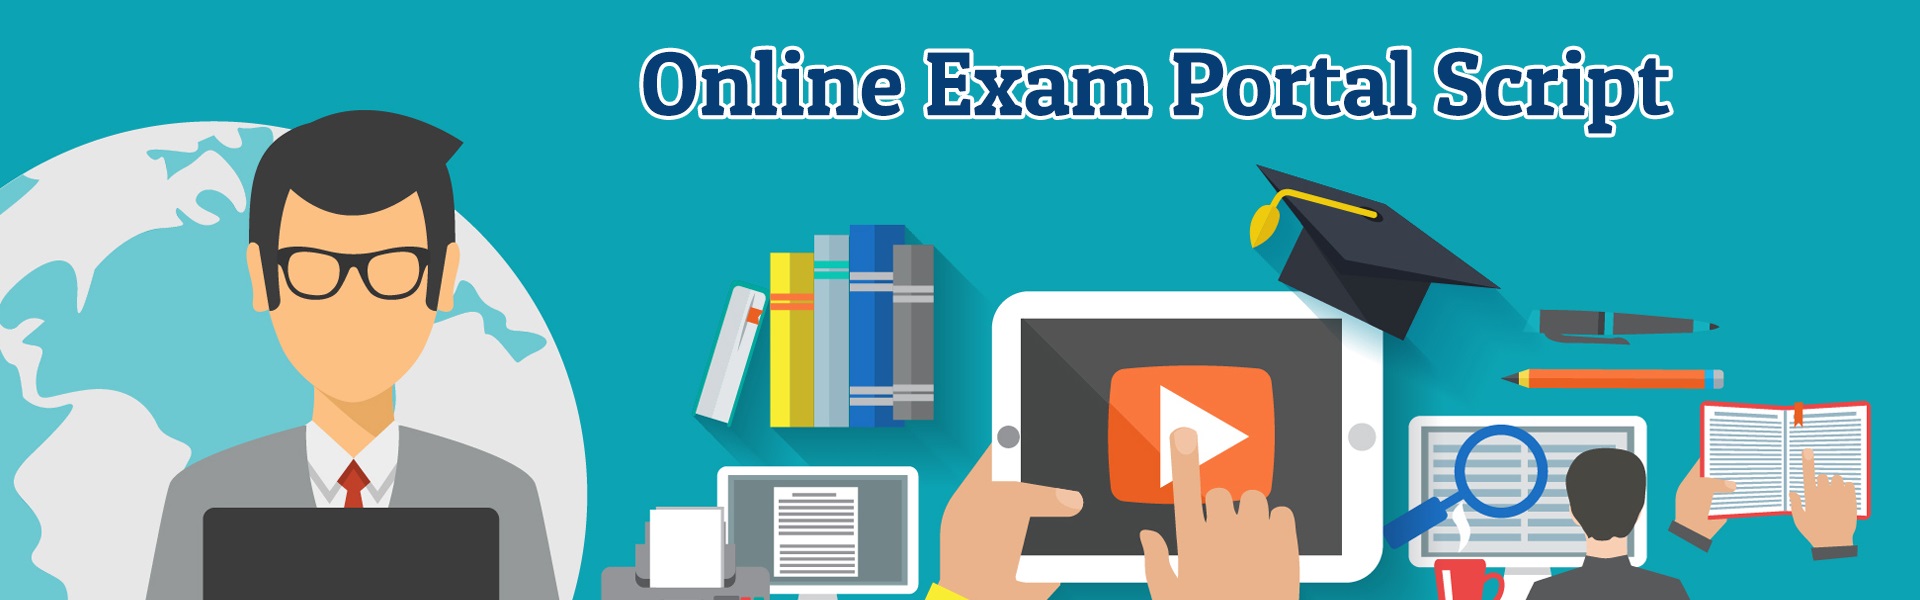 Online Exam Portal Script